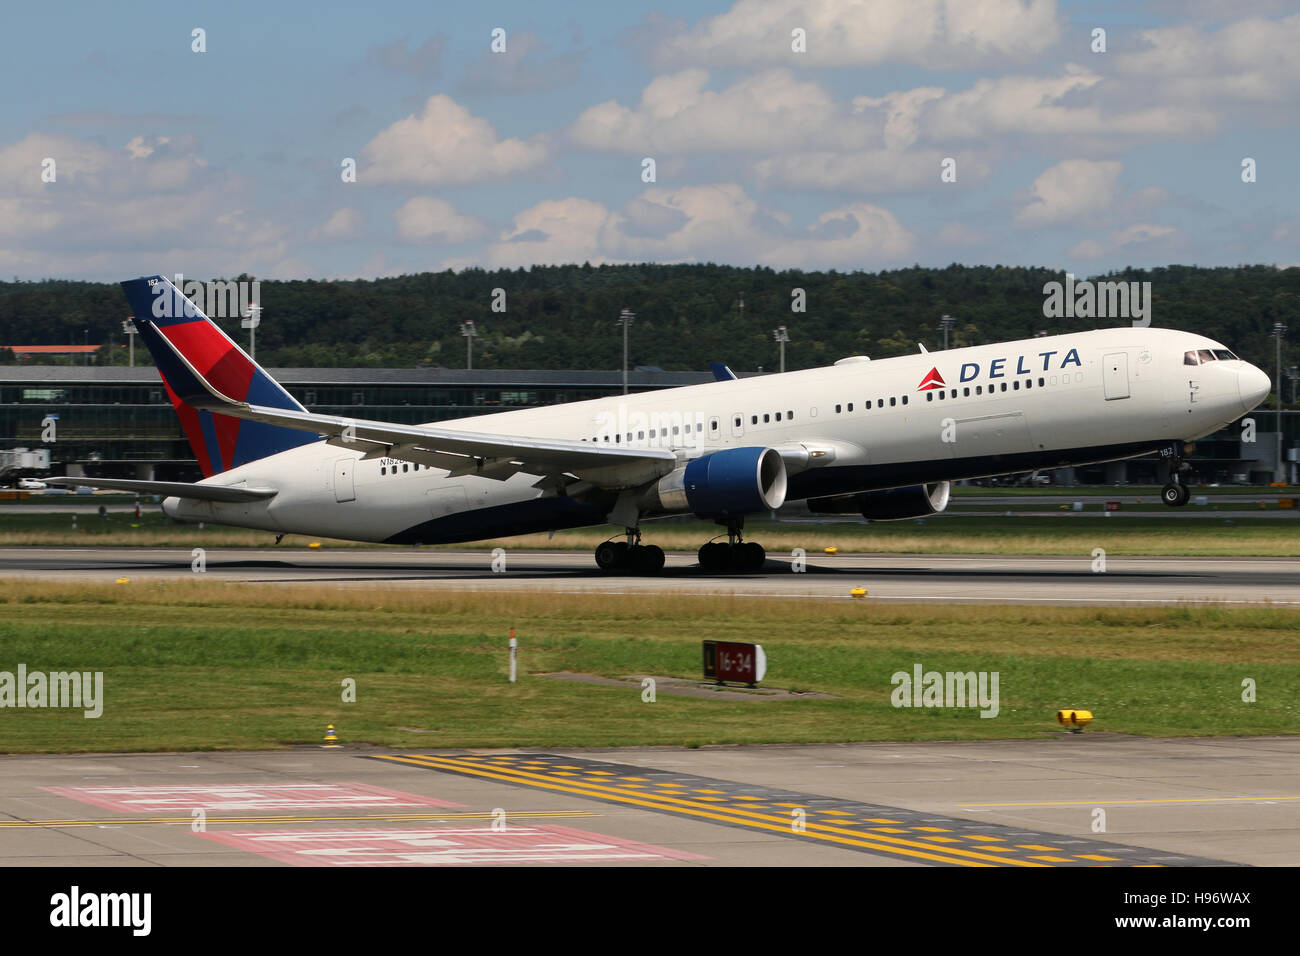 Zürich, Schweiz - 29. Juli 2016: Delta Airlines Boeing 767 auf dem  Flughafen Zürich nimmt ab Stockfotografie - Alamy